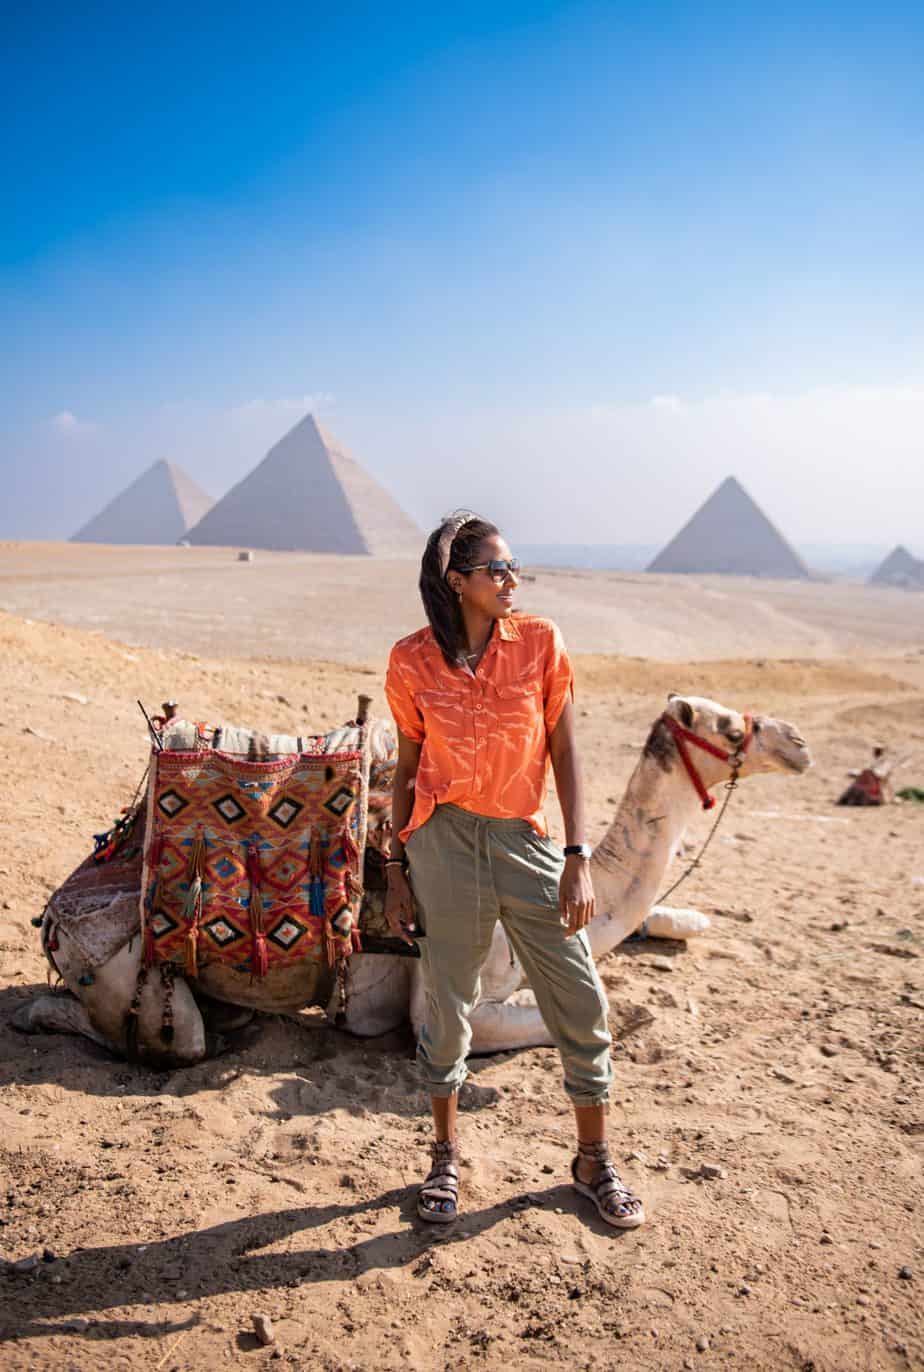 sherita at the pyramids 